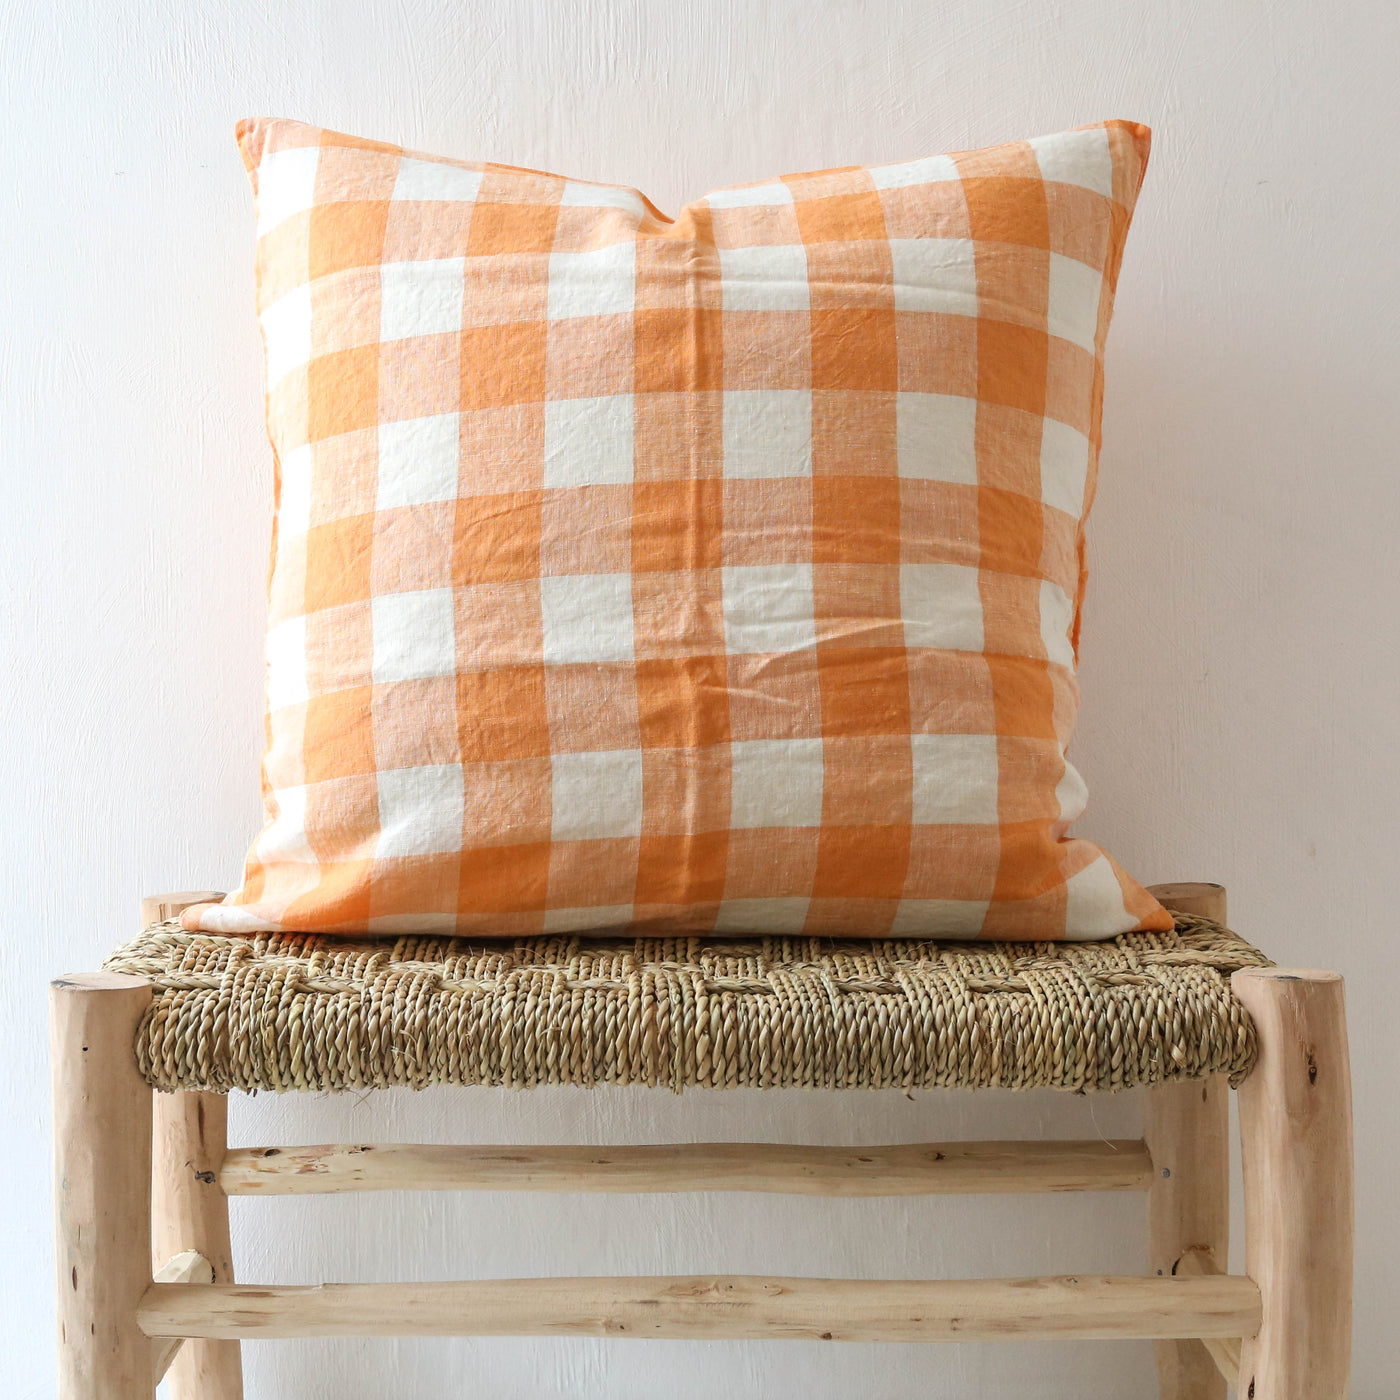 'Peaches and Cream' Linen Cushion Cover